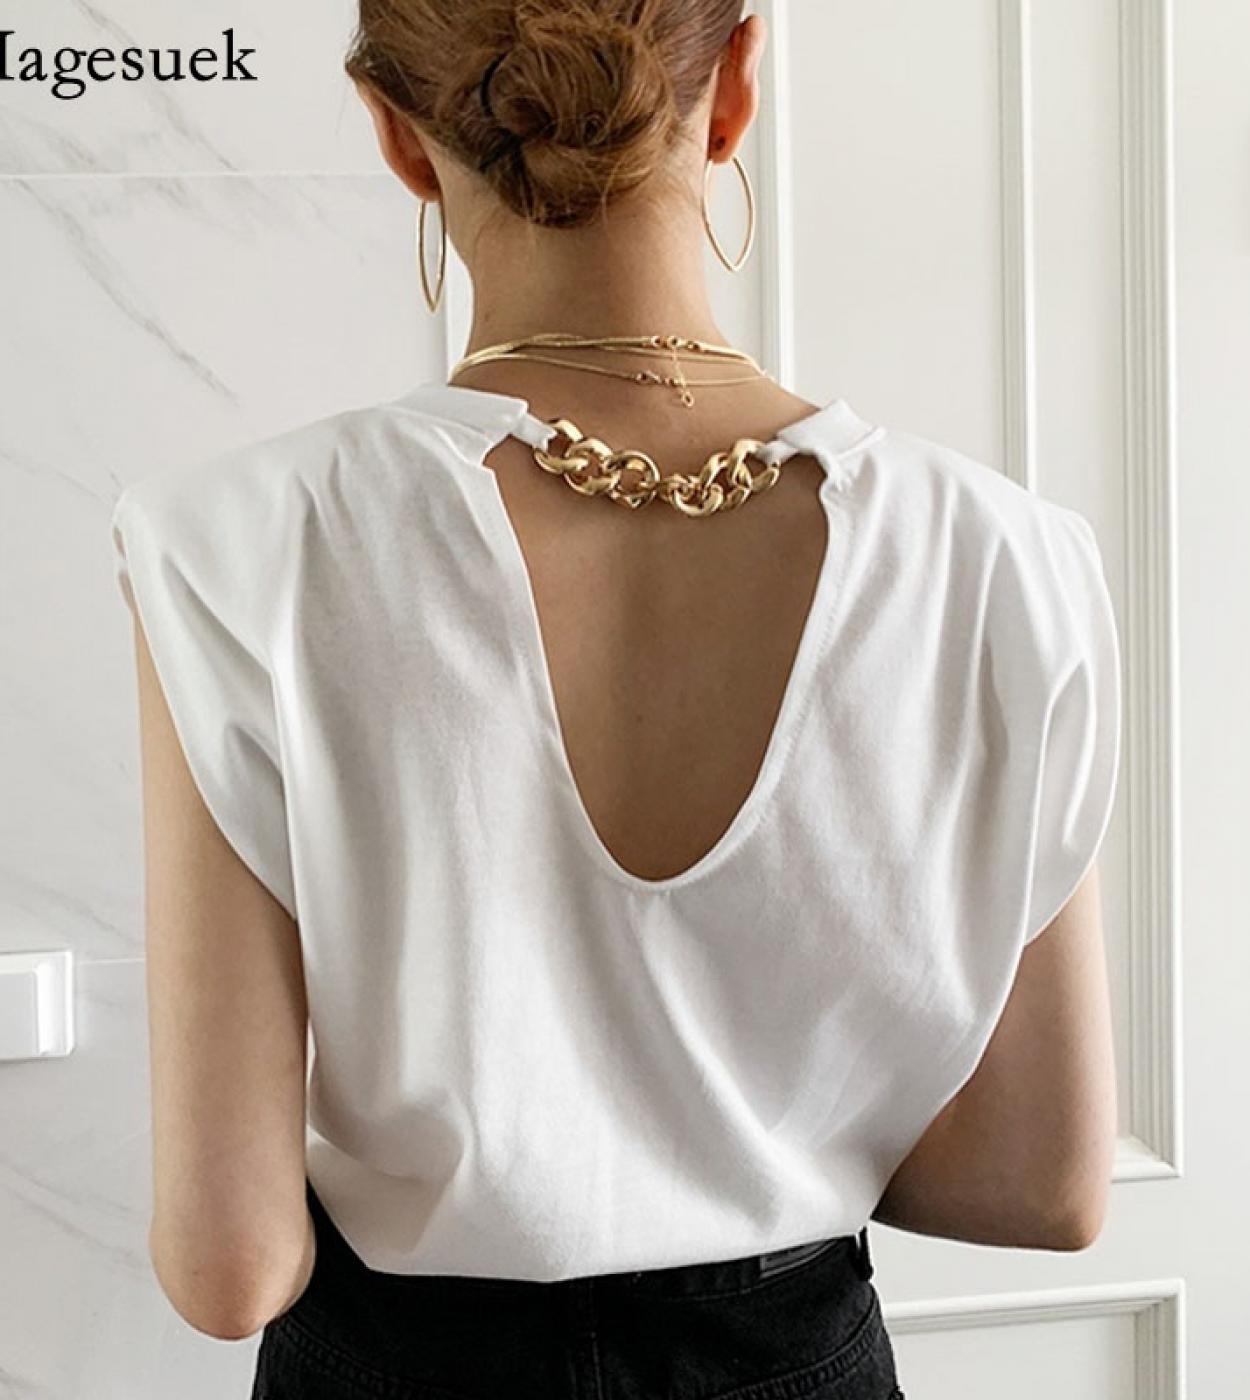  Backless Tops Tshirt Elegant White Tees Fashion Sleeveless Vests Female Chain O Neck Tshirt Shoulder Pads Blusas 15521 